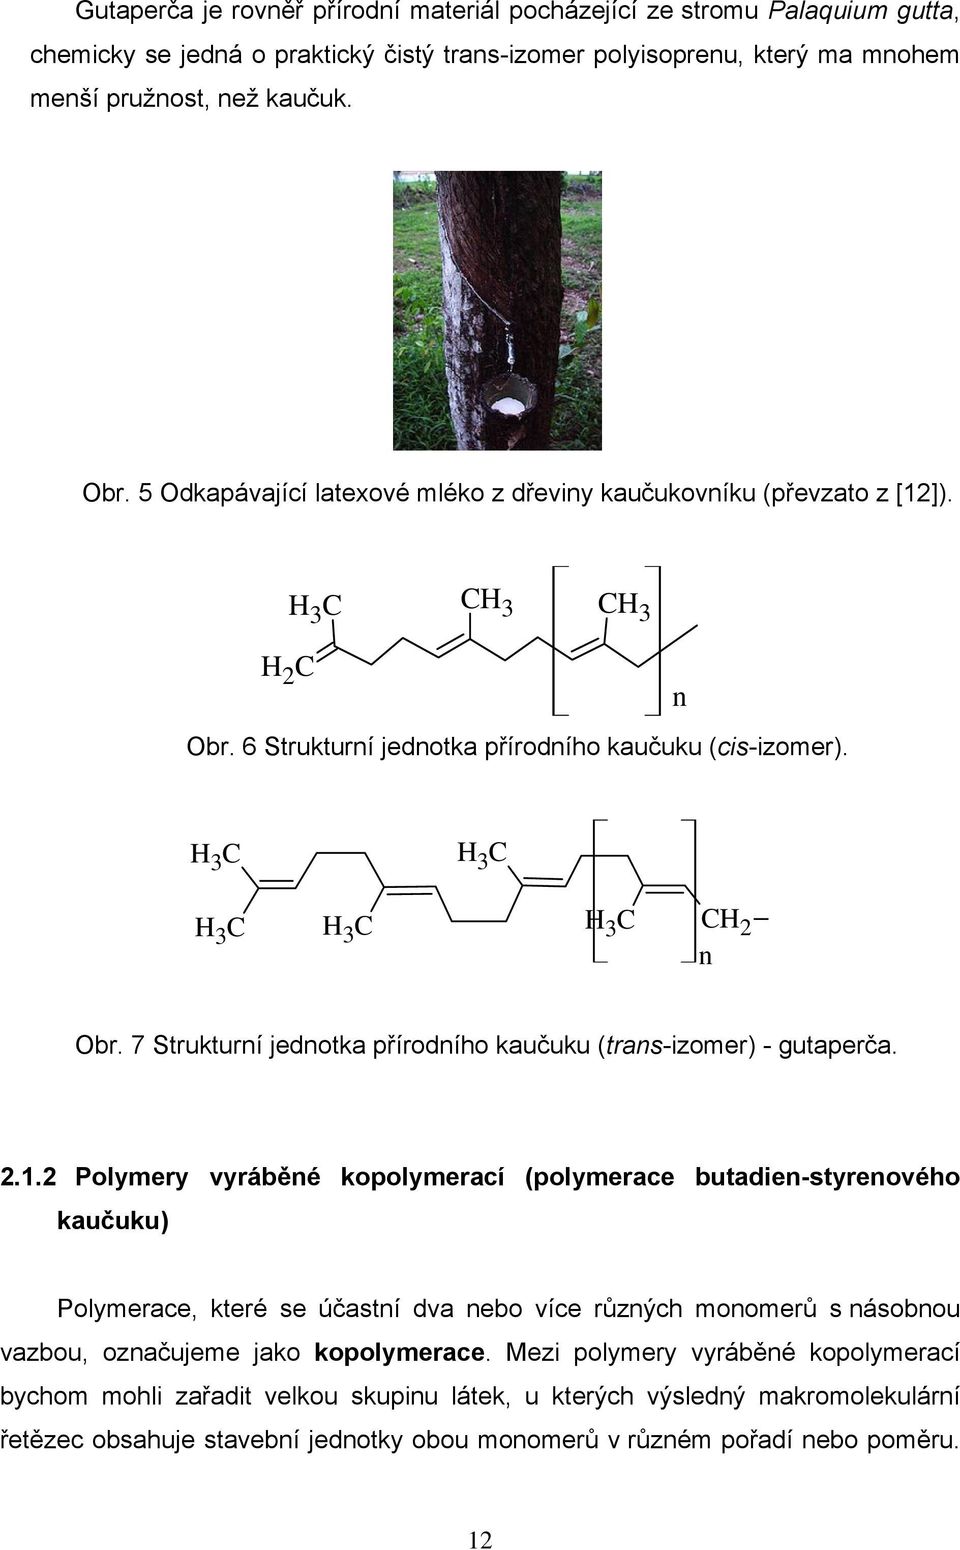 7 Strukturí jedotka přírodího kaučuku (tras-izomer) - gutaperča. 2.1.